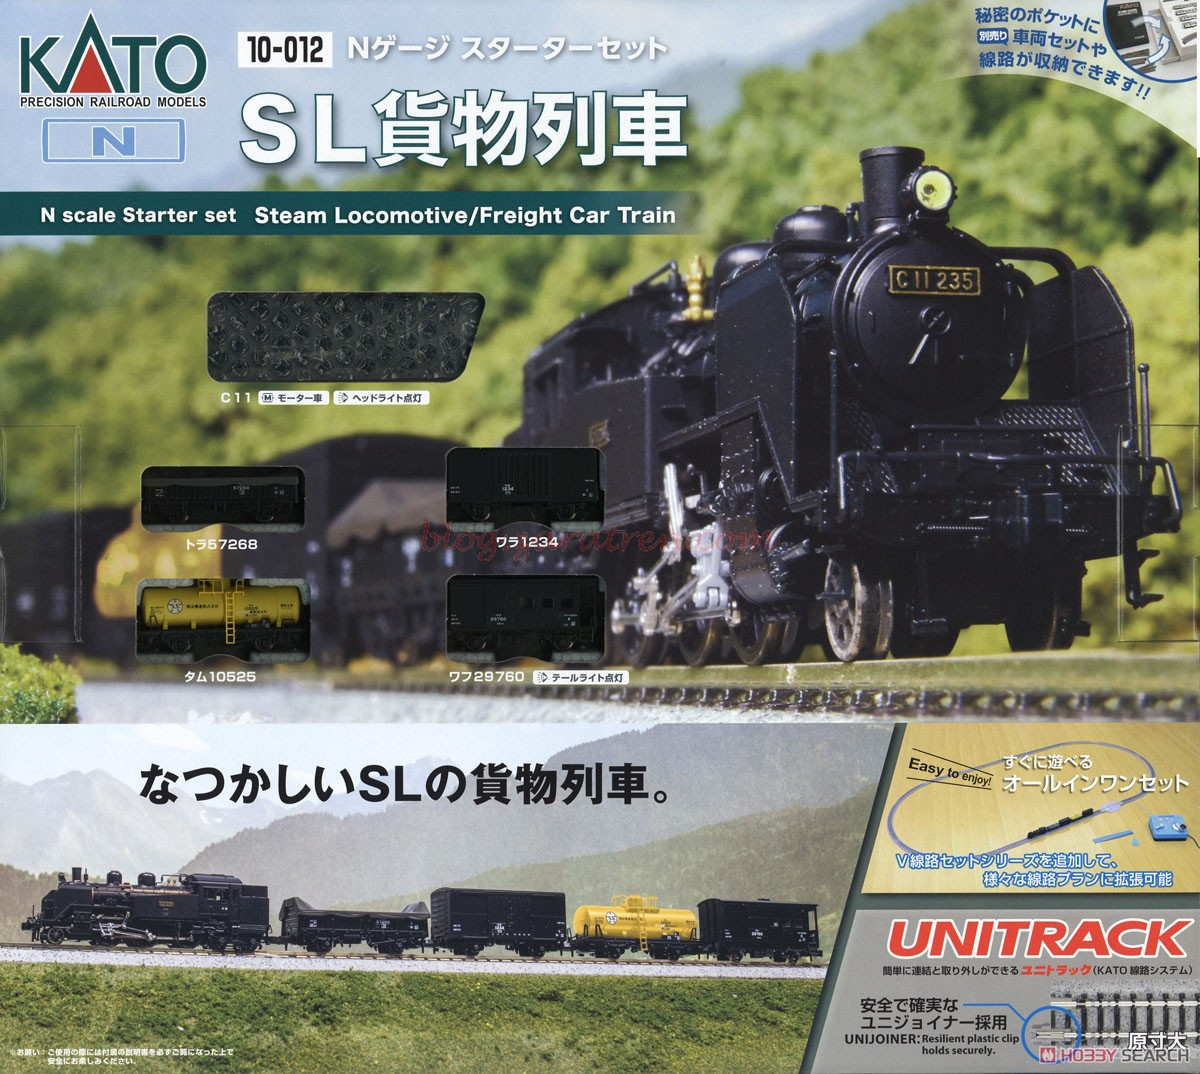 Kato – Set de inicio Locomotora de Vapor C11 mas 4 vagones Mercancias, Escala N, Ref: 10-012.